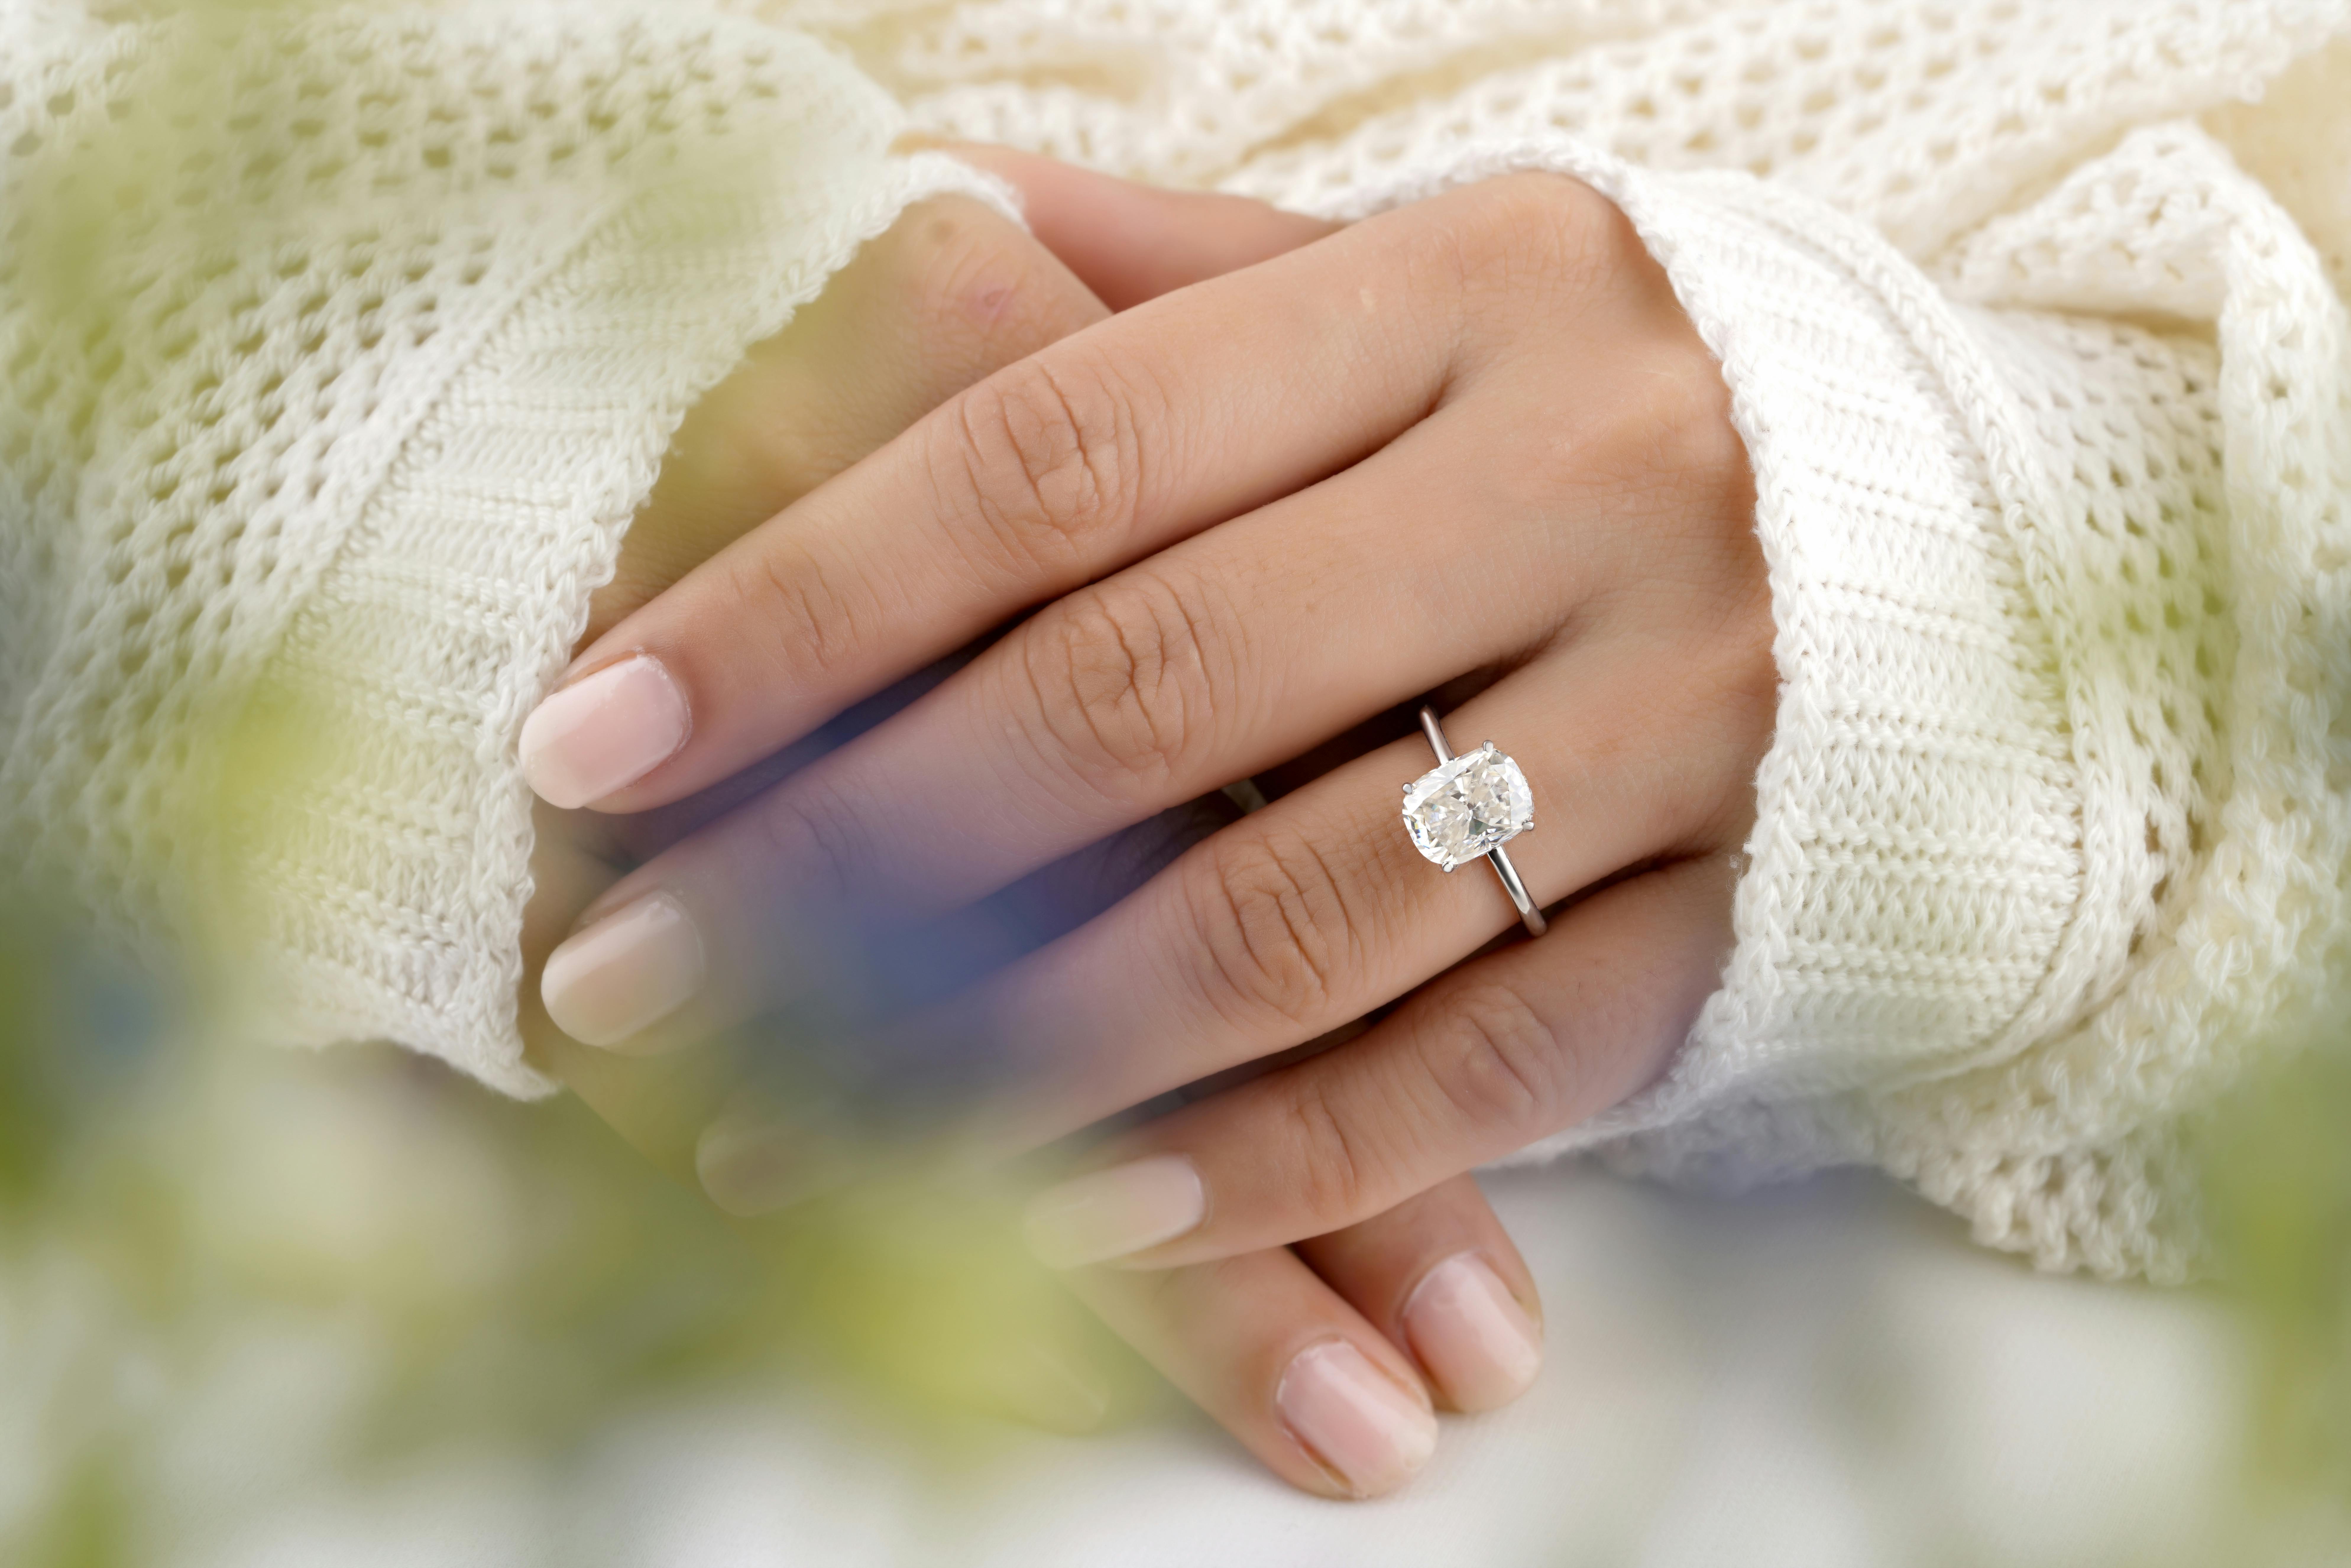 Diamond Ring on White Surface · Free Stock Photo